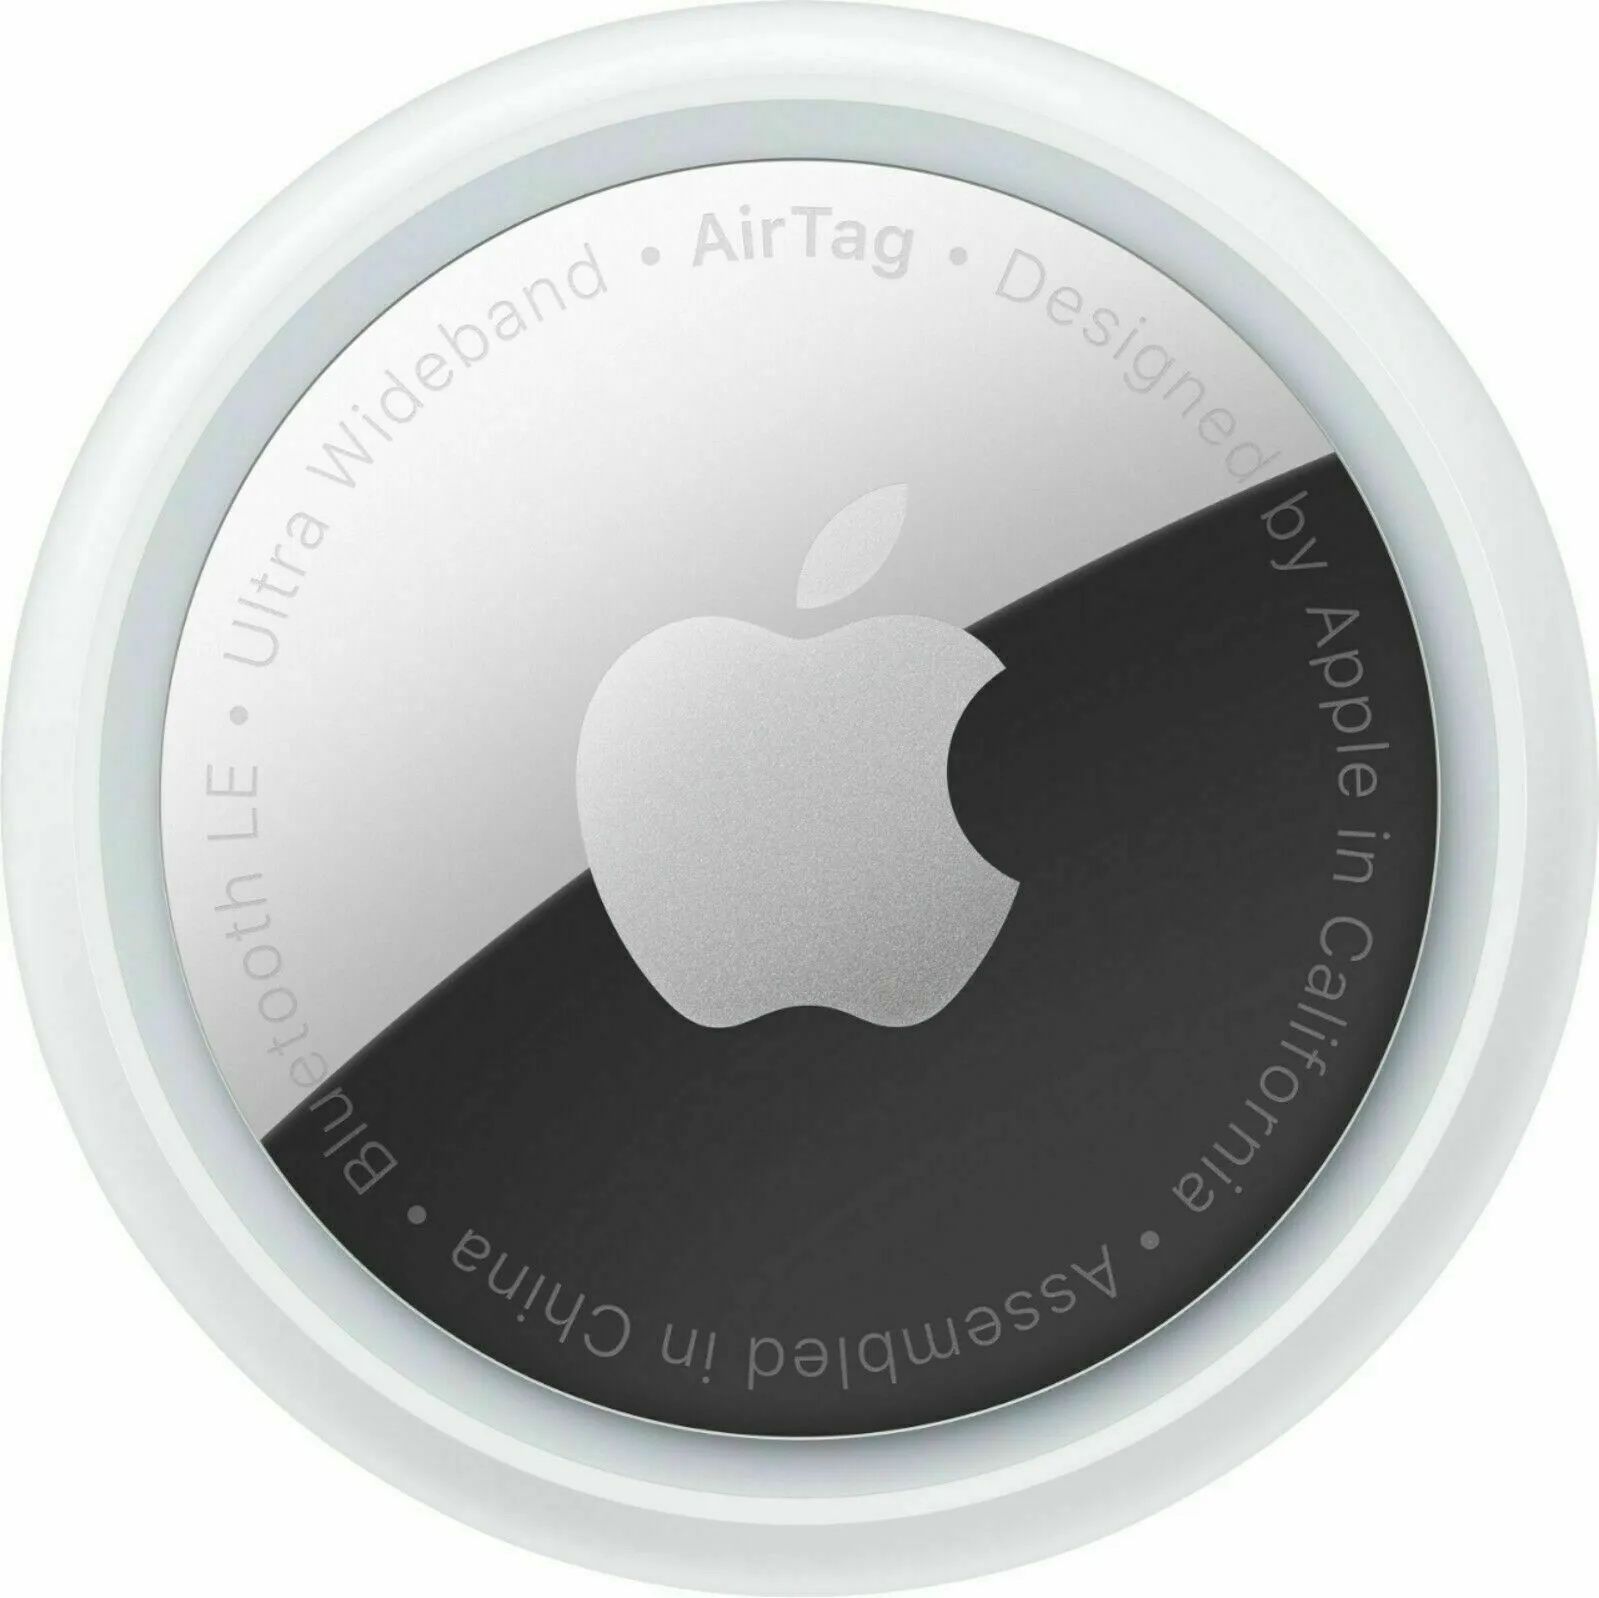 Apple original AirTag